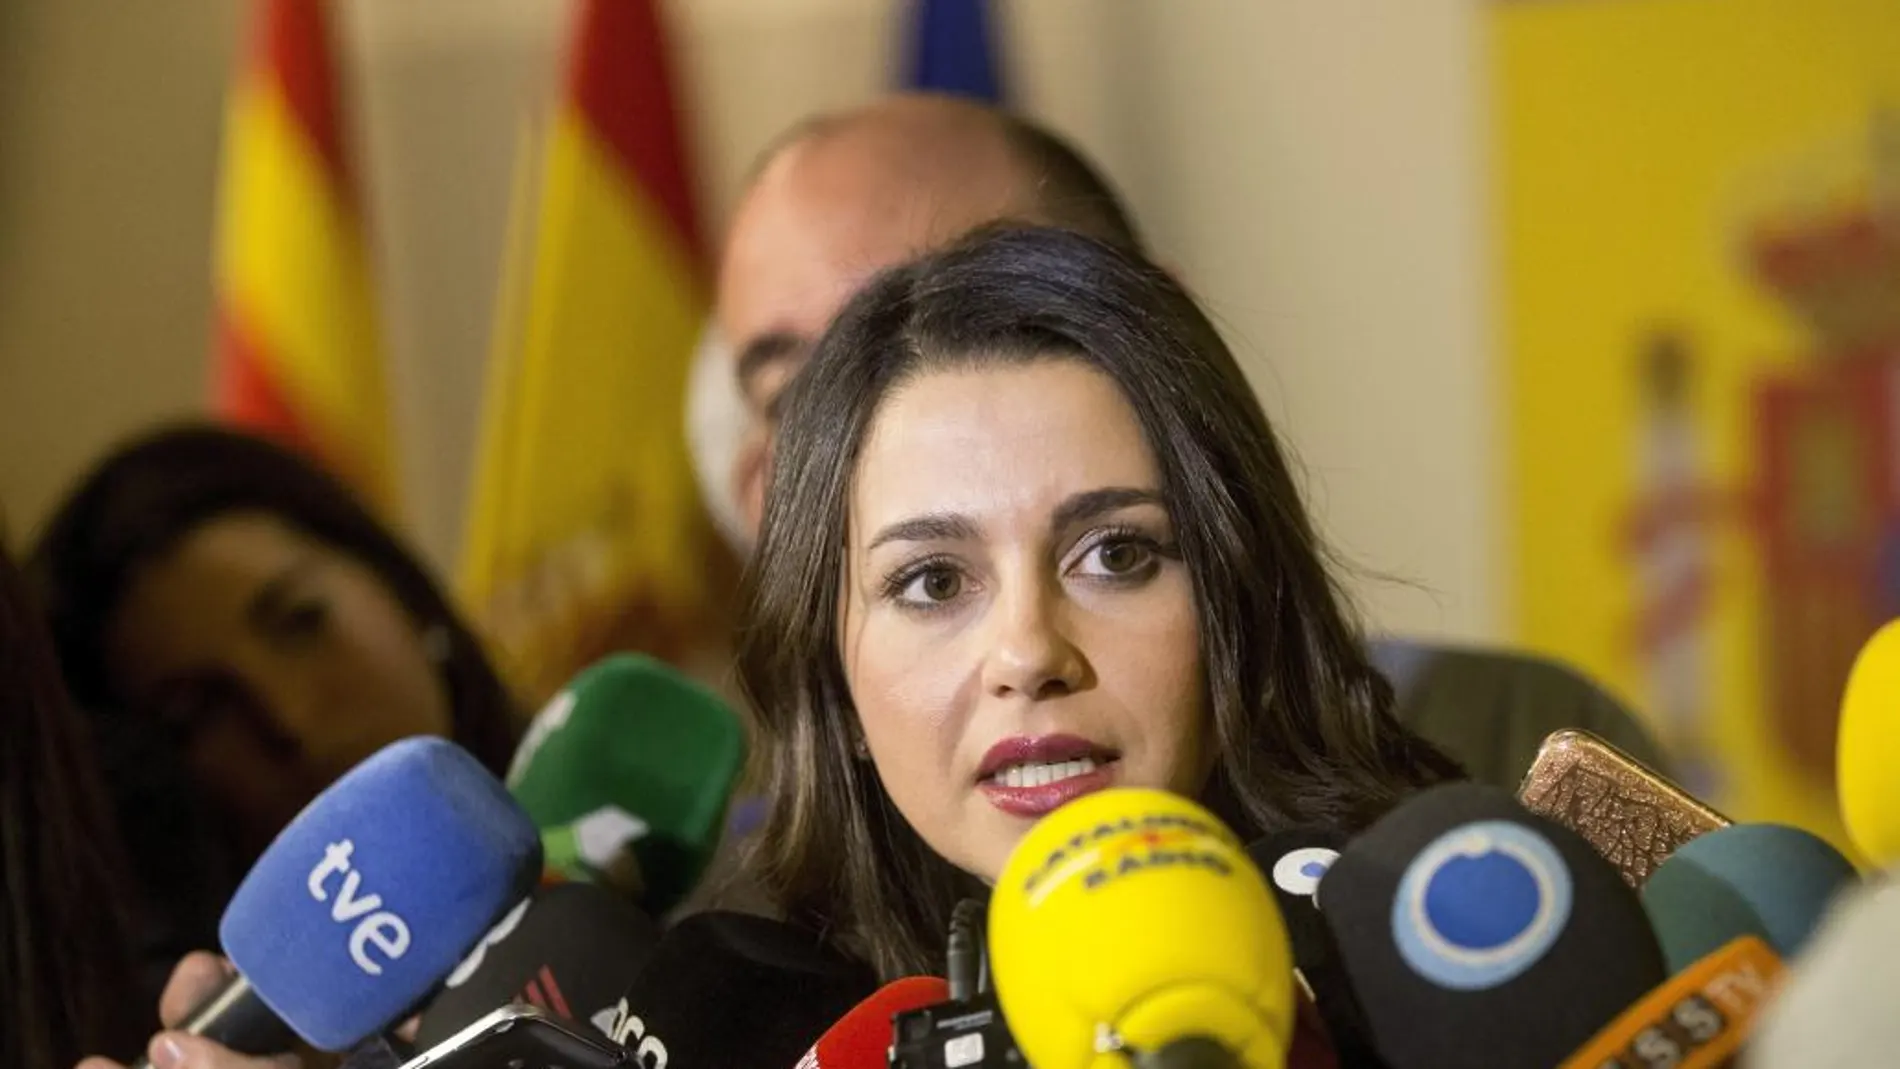 La líder de Ciutadans en Cataluña, Inés Arrimadas, atiende a los medios tras su reunión con la vicepresidenta del Gobierno.